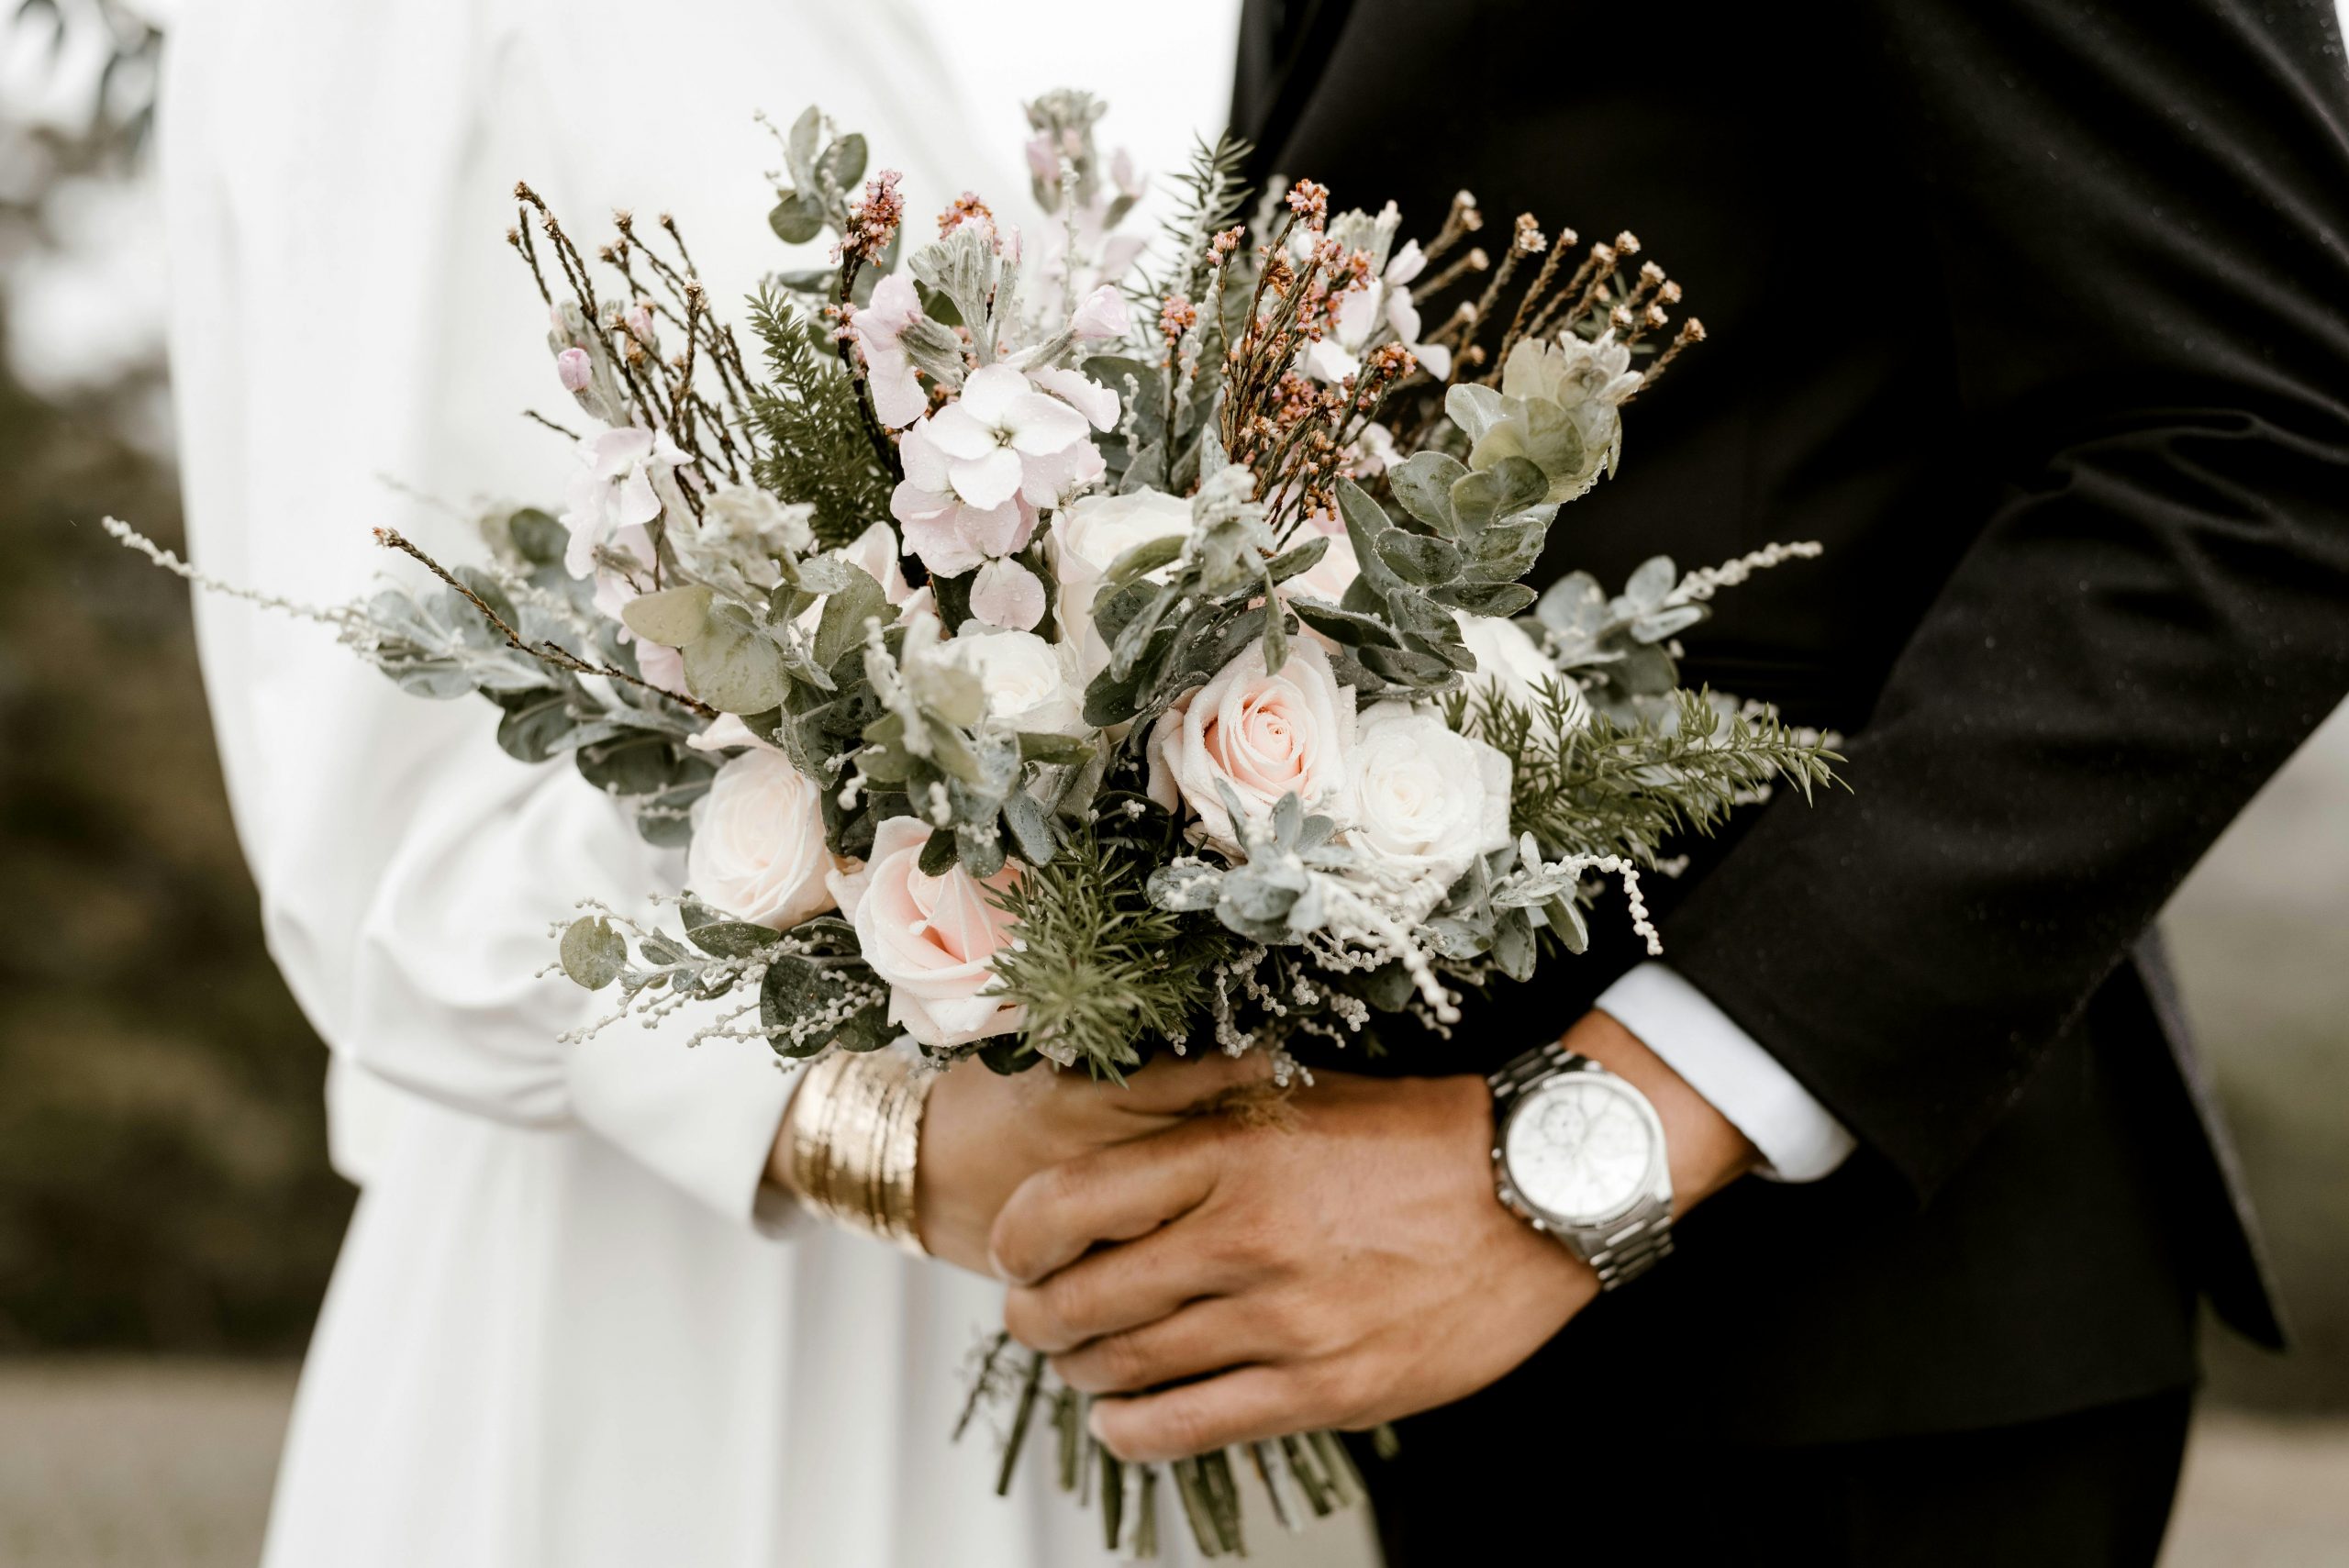 Cameron Dever, fotograf de nuntă, explică 4 dintre cele mai mari greșeli pe care le fac cuplurile când se pregătesc pentru marele eveniment